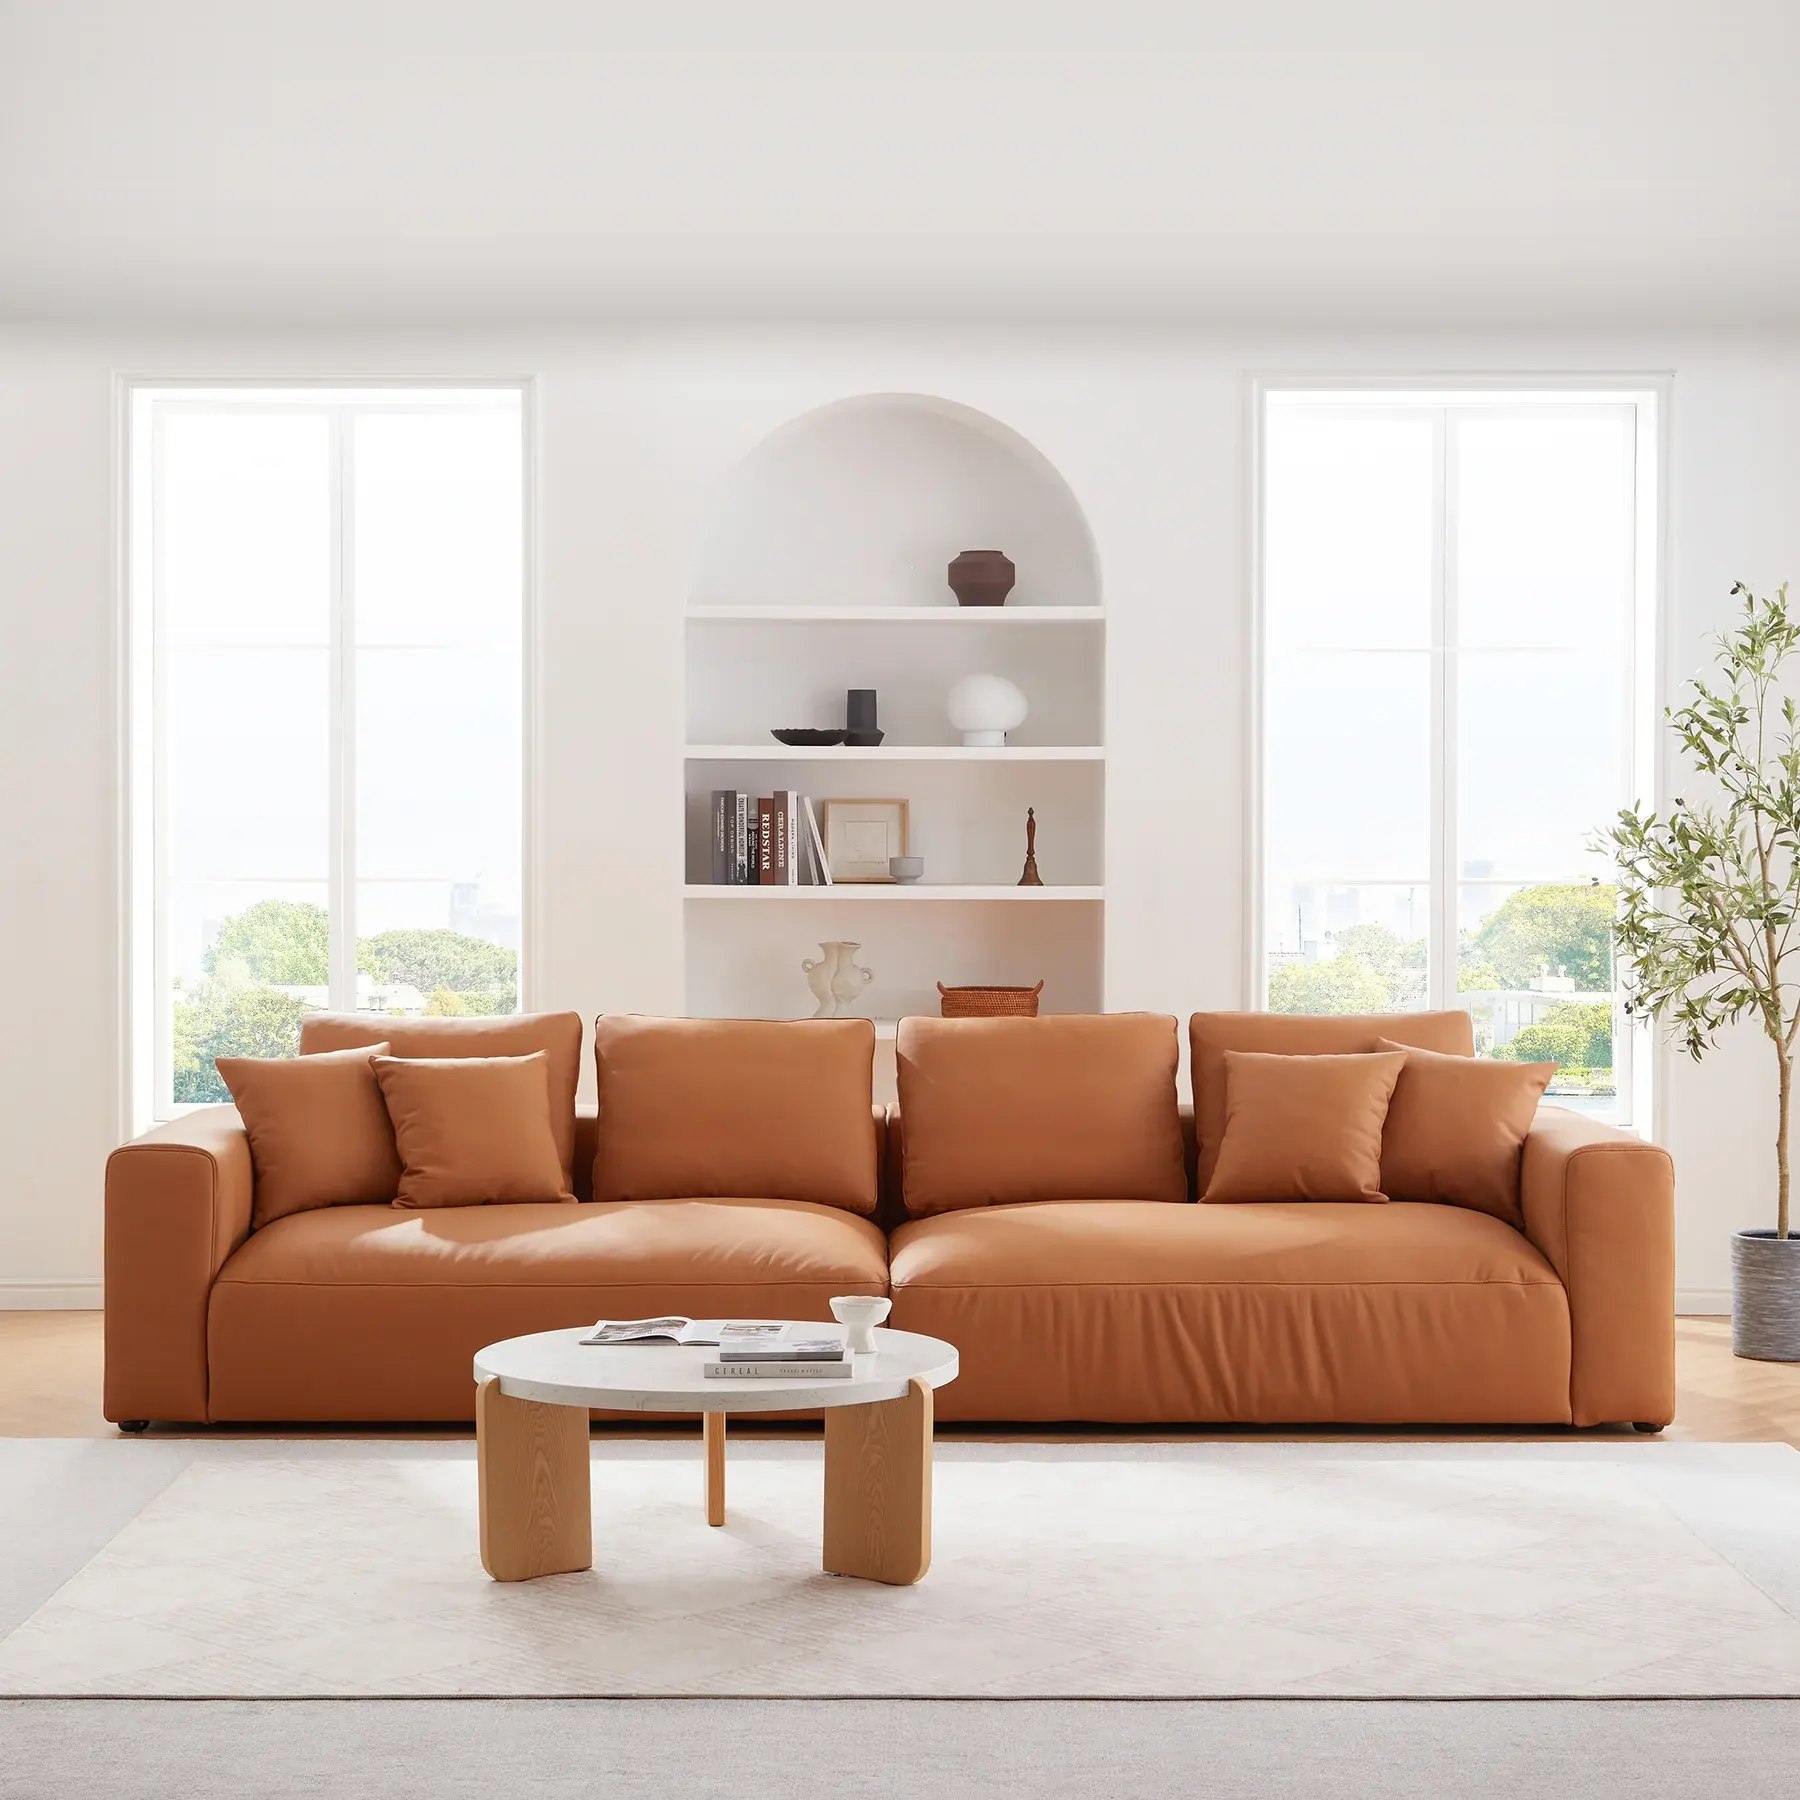 طقم أريكة فاخر عصري من النسيج الفاخر لغرفة المعيشة برتقالي اللون بسعر المصنع، مجموعة أثاث منزلية